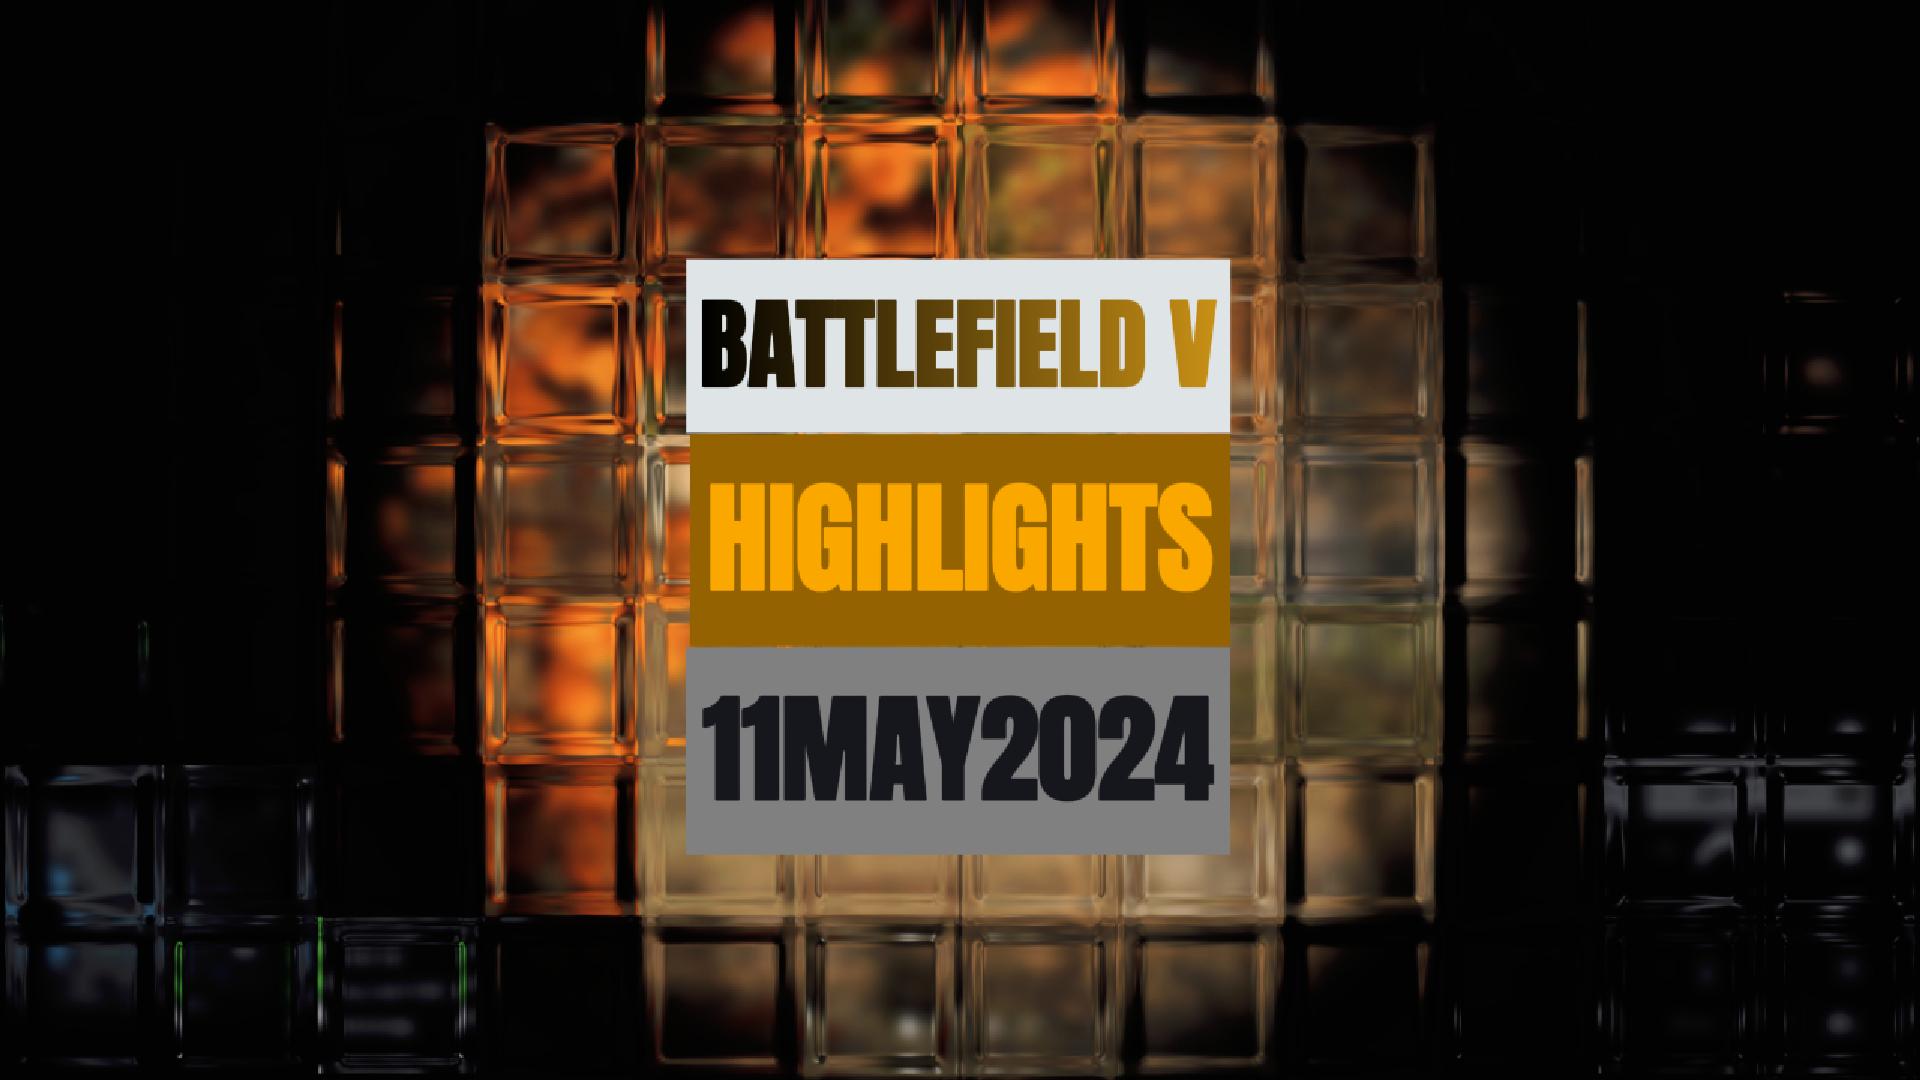 Battlefield V Kills 2 11.MAY.24